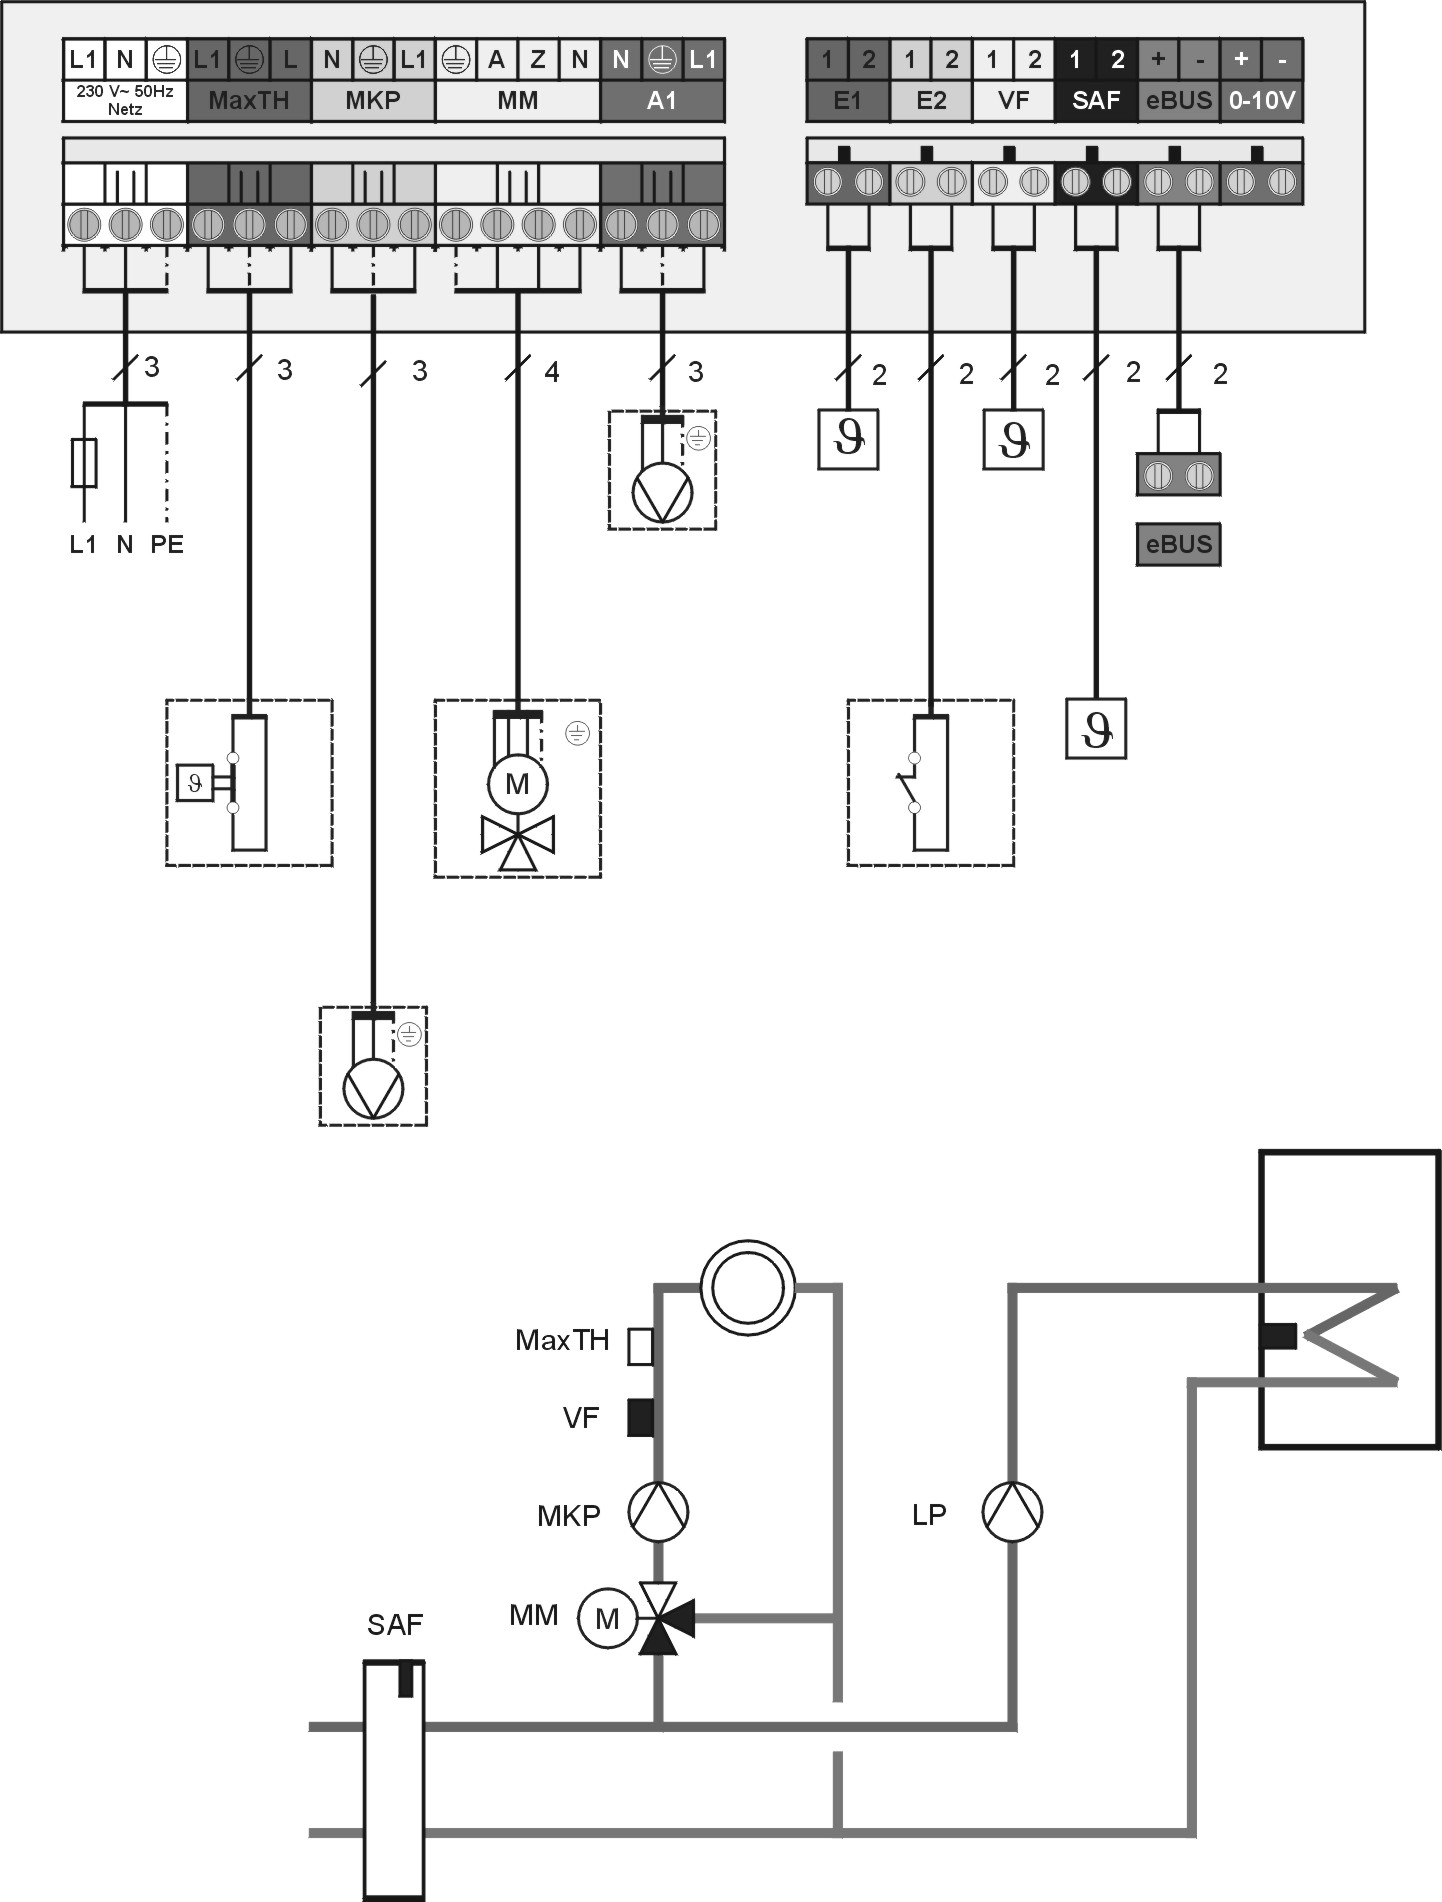 Ηλεκτρική σύνδεση Διαμόρφωση 1: Κύκλωμα ανάμιξης και κύκλωμα μποϊλερ Δίκτυο 230V AC Αισθητήρας μποϊλερ Κυκλοφορητής φόρτισης SPF μποϊλερ SPLP Αισθητήρας προσαγωγής κυκλώματος ανάμιξης VF Λέβητας